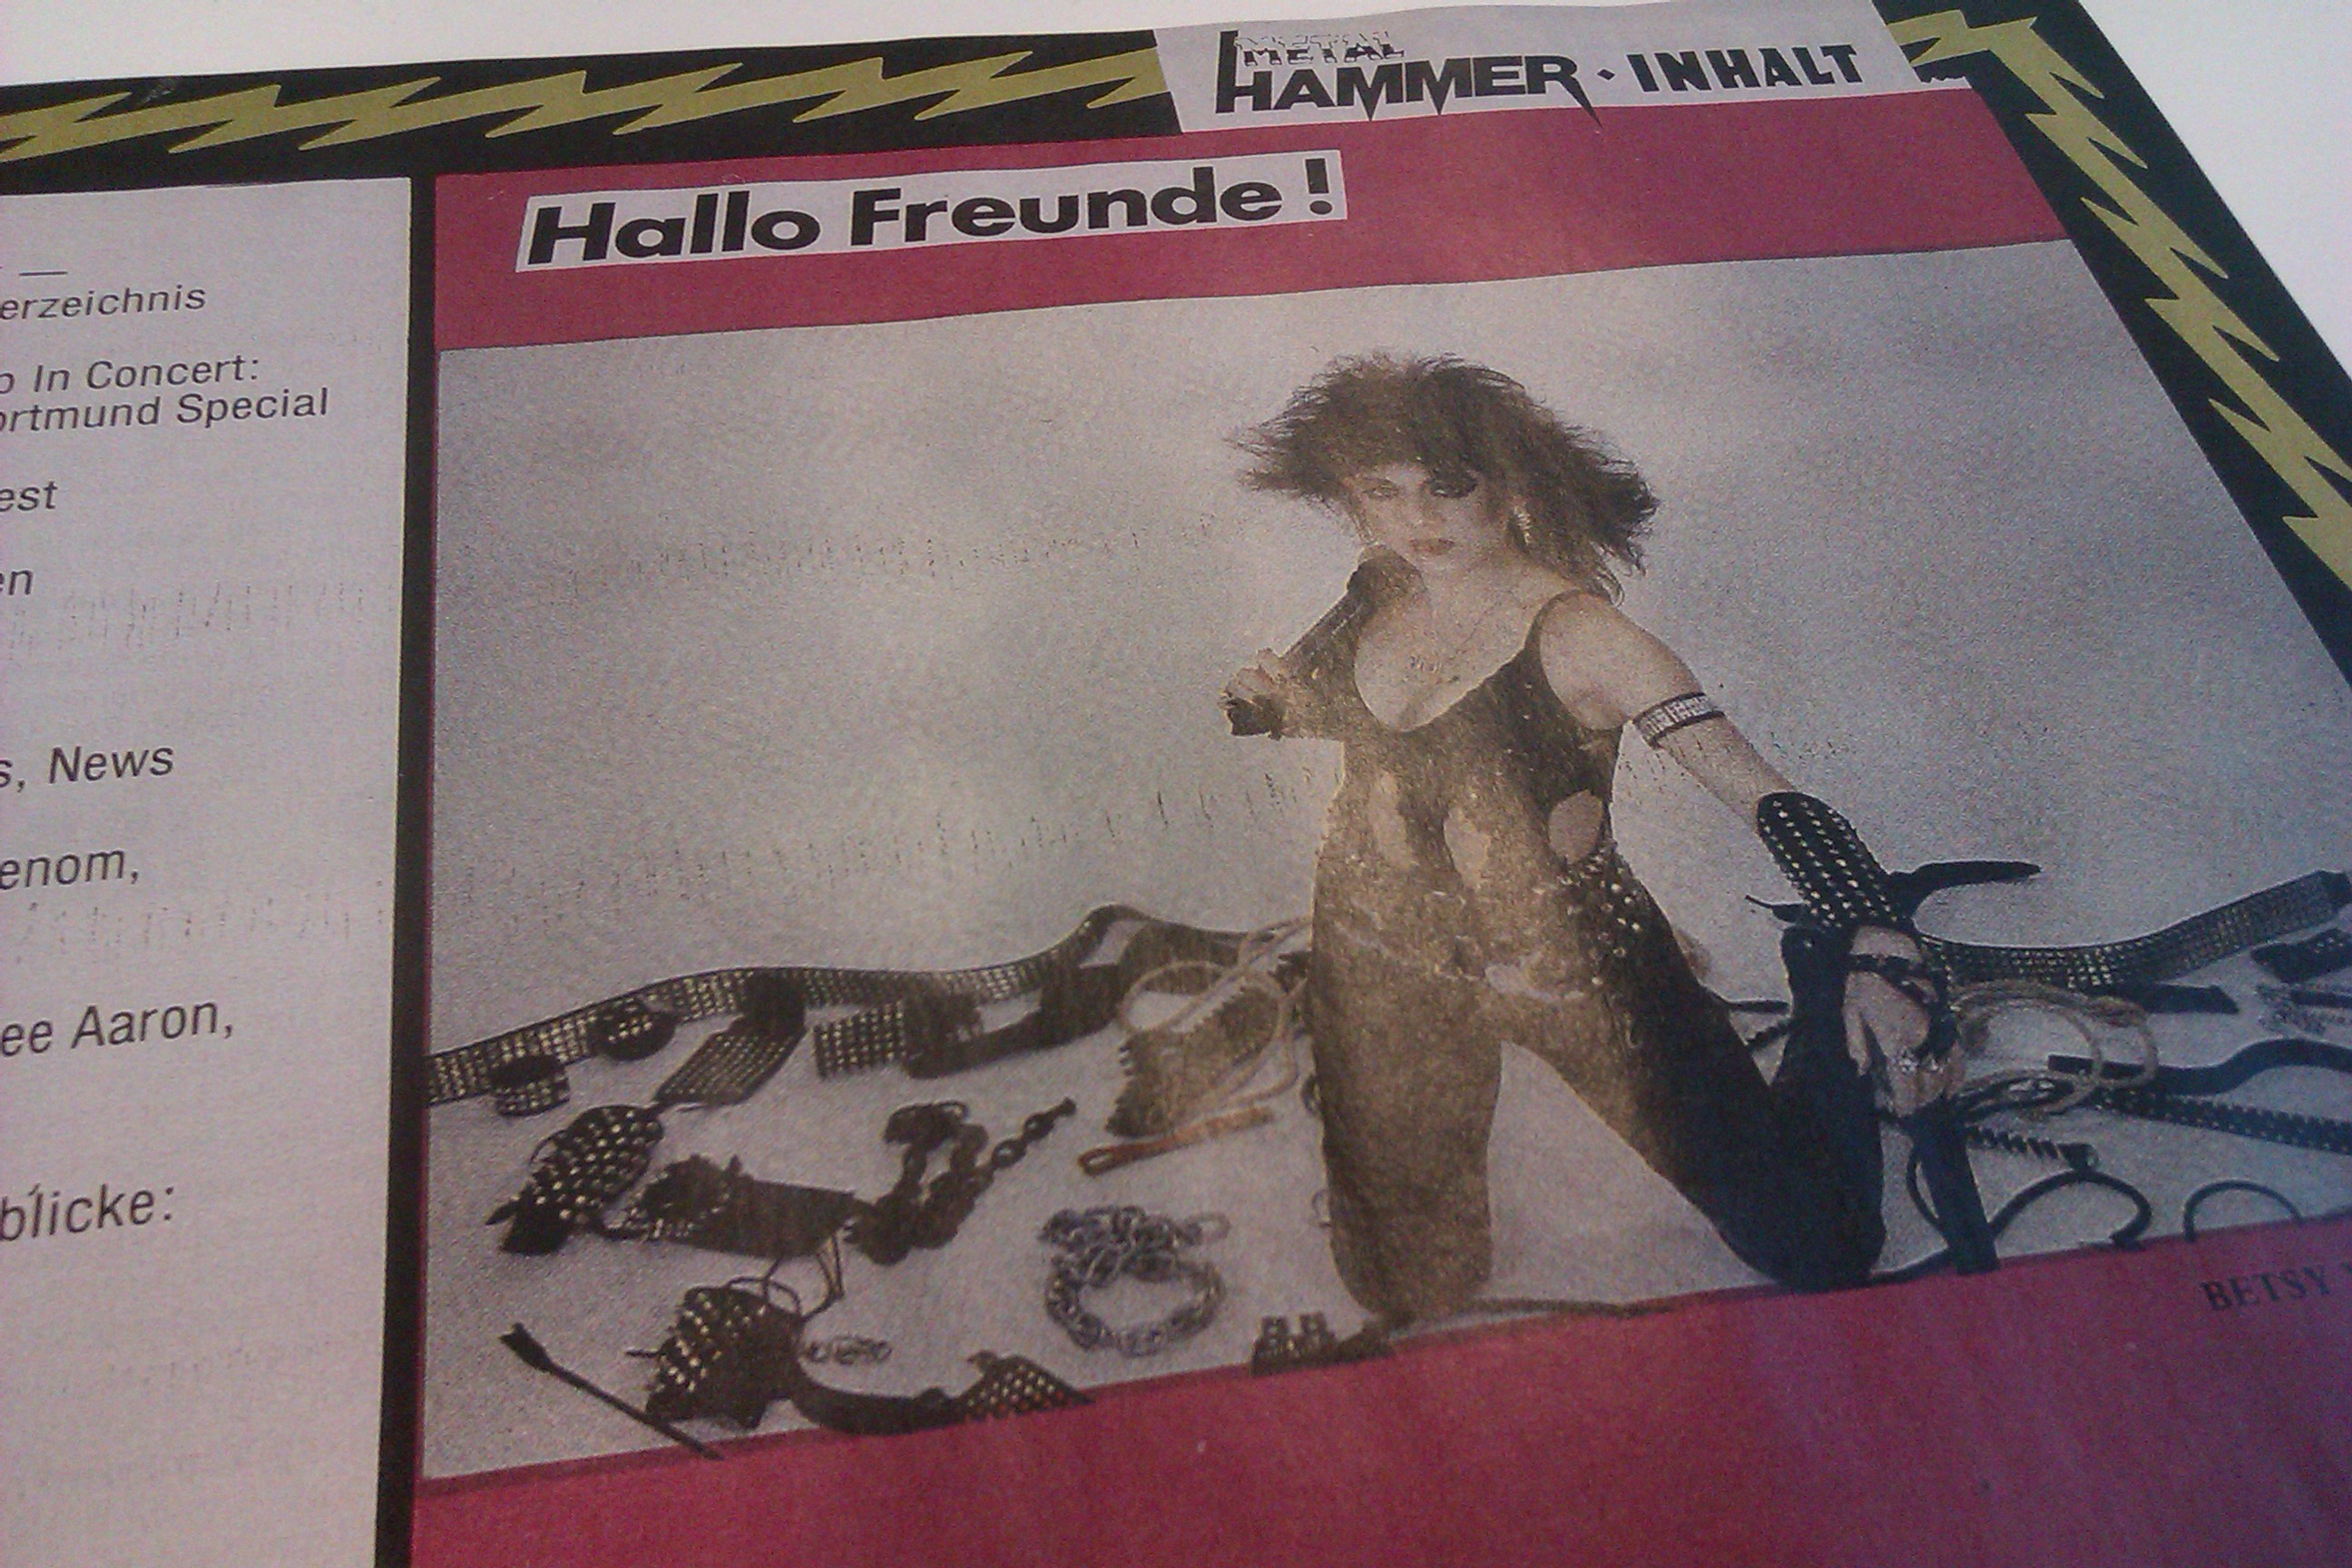 METAL HAMMER-Ausgabe 02/2014